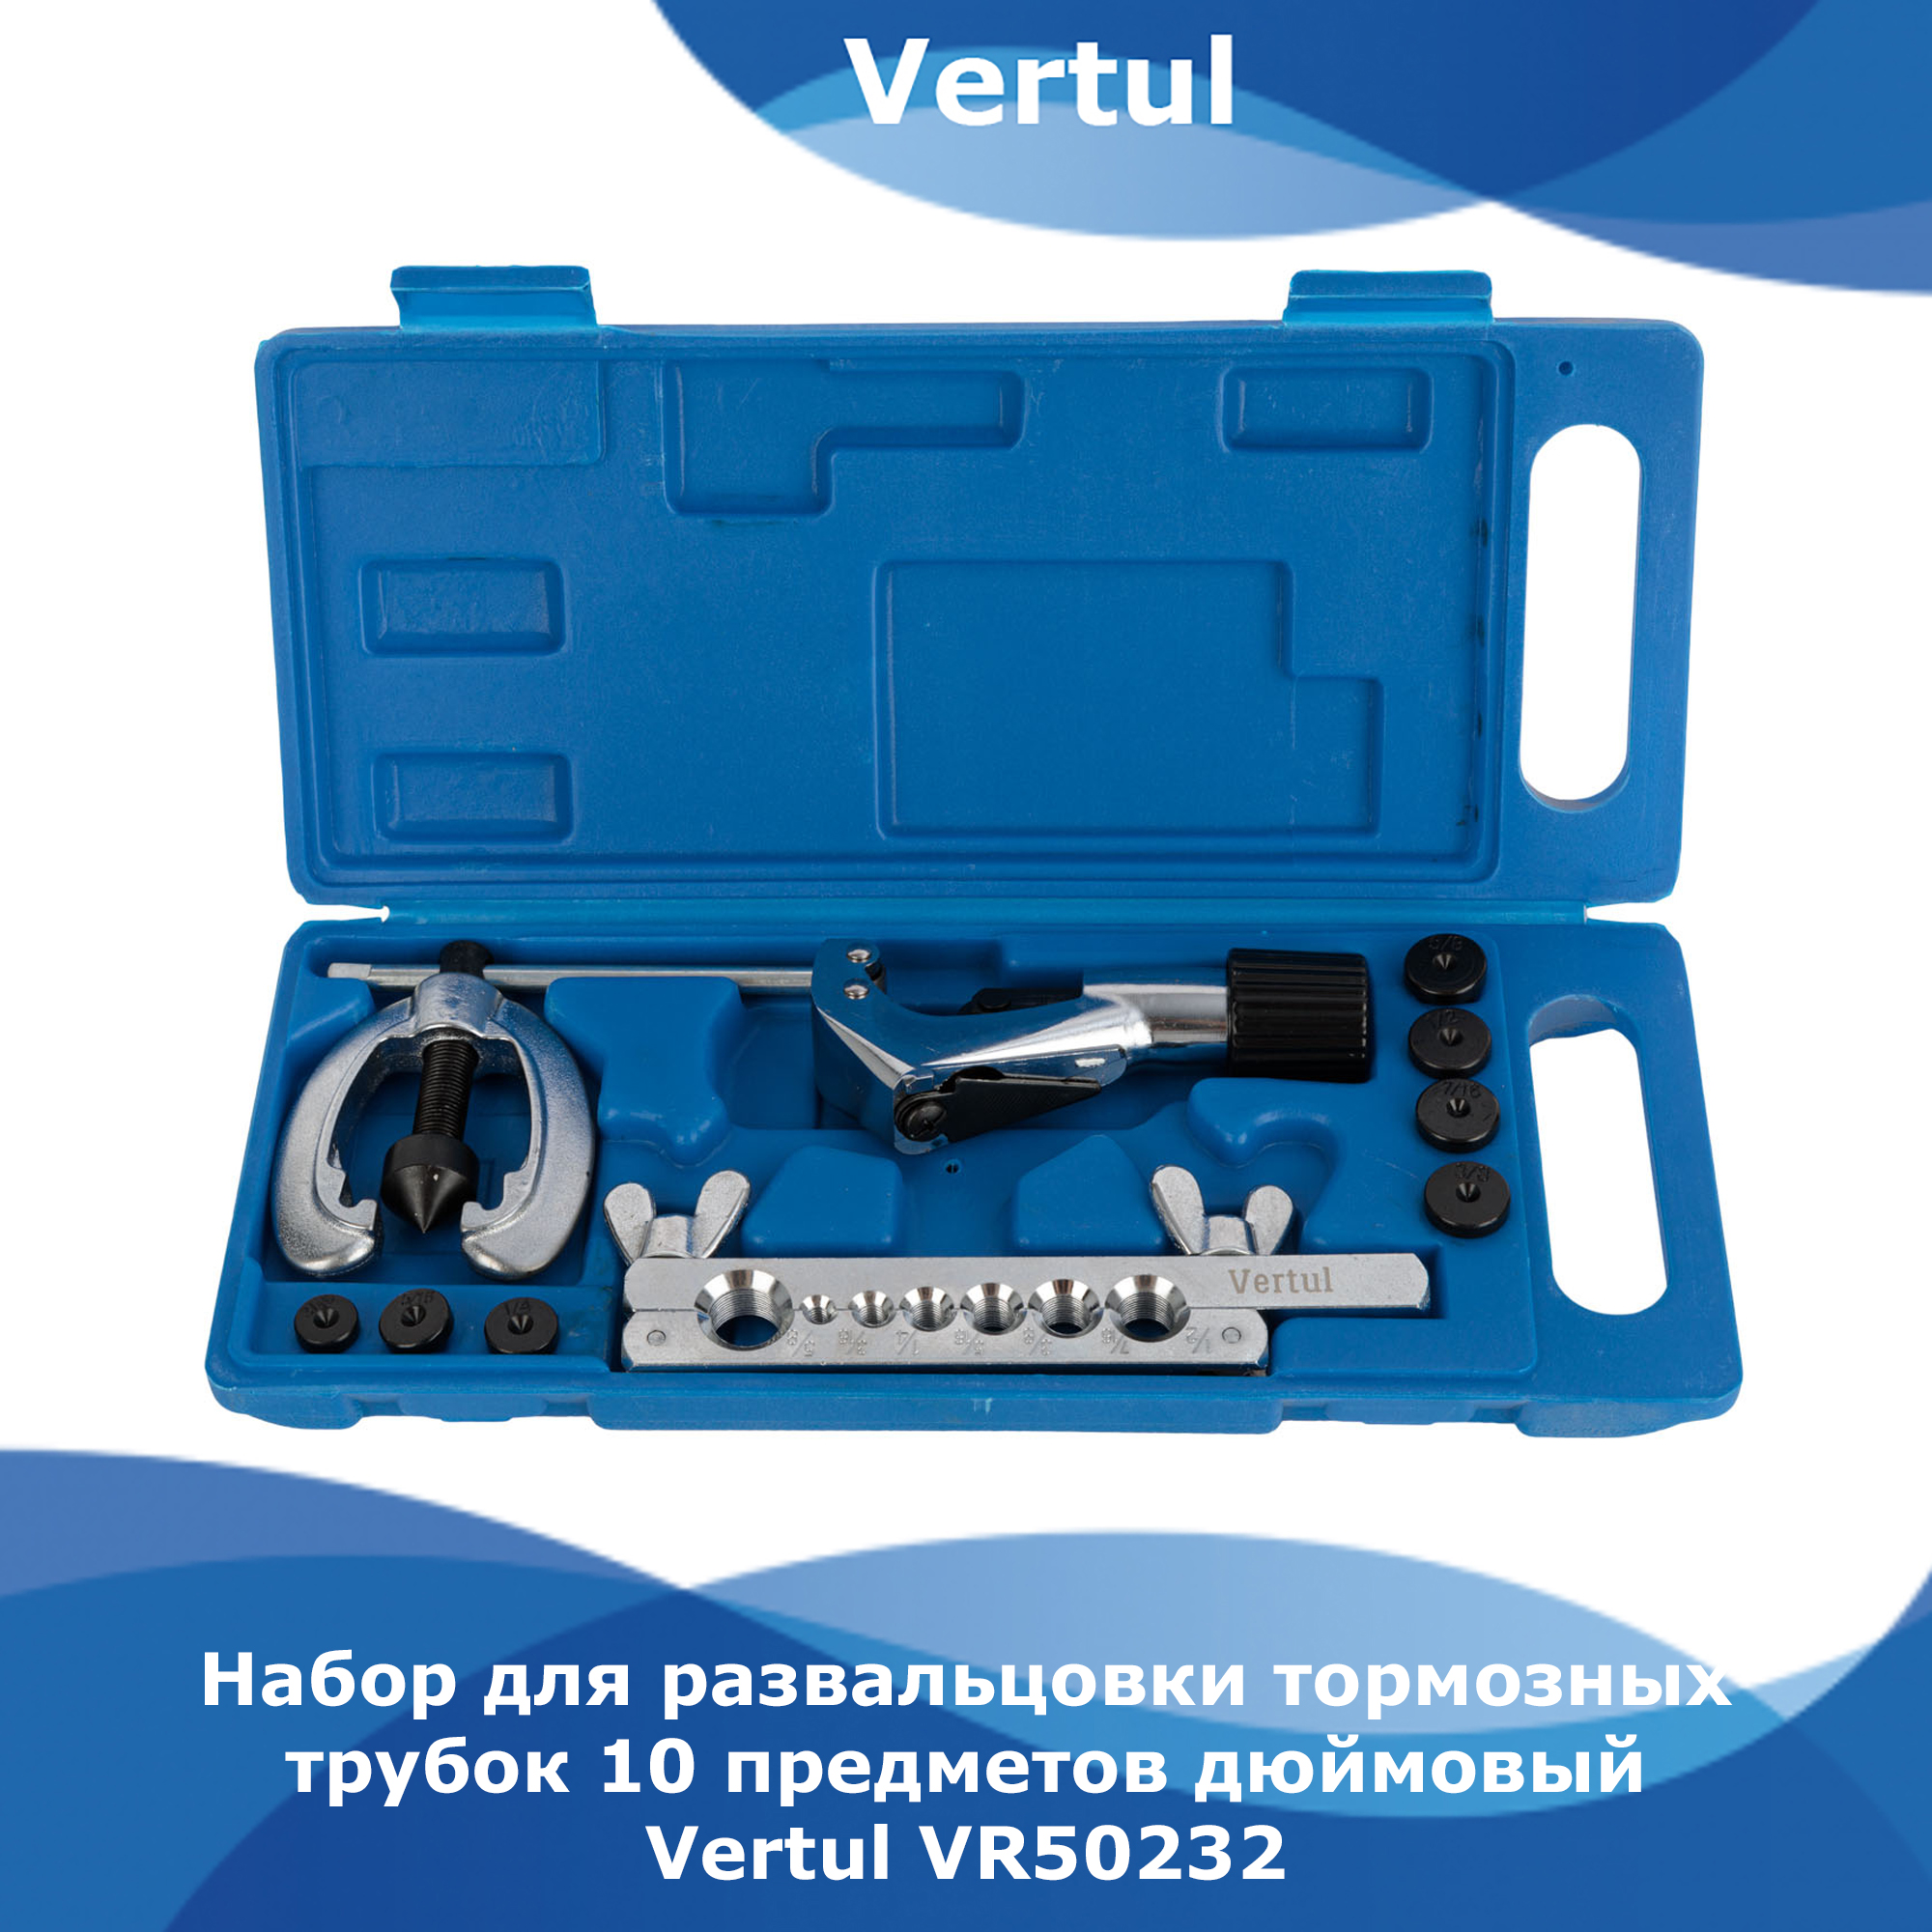 Набор Vertul для развальцовки тормозных трубок 10 предметов дюймовый VR50232